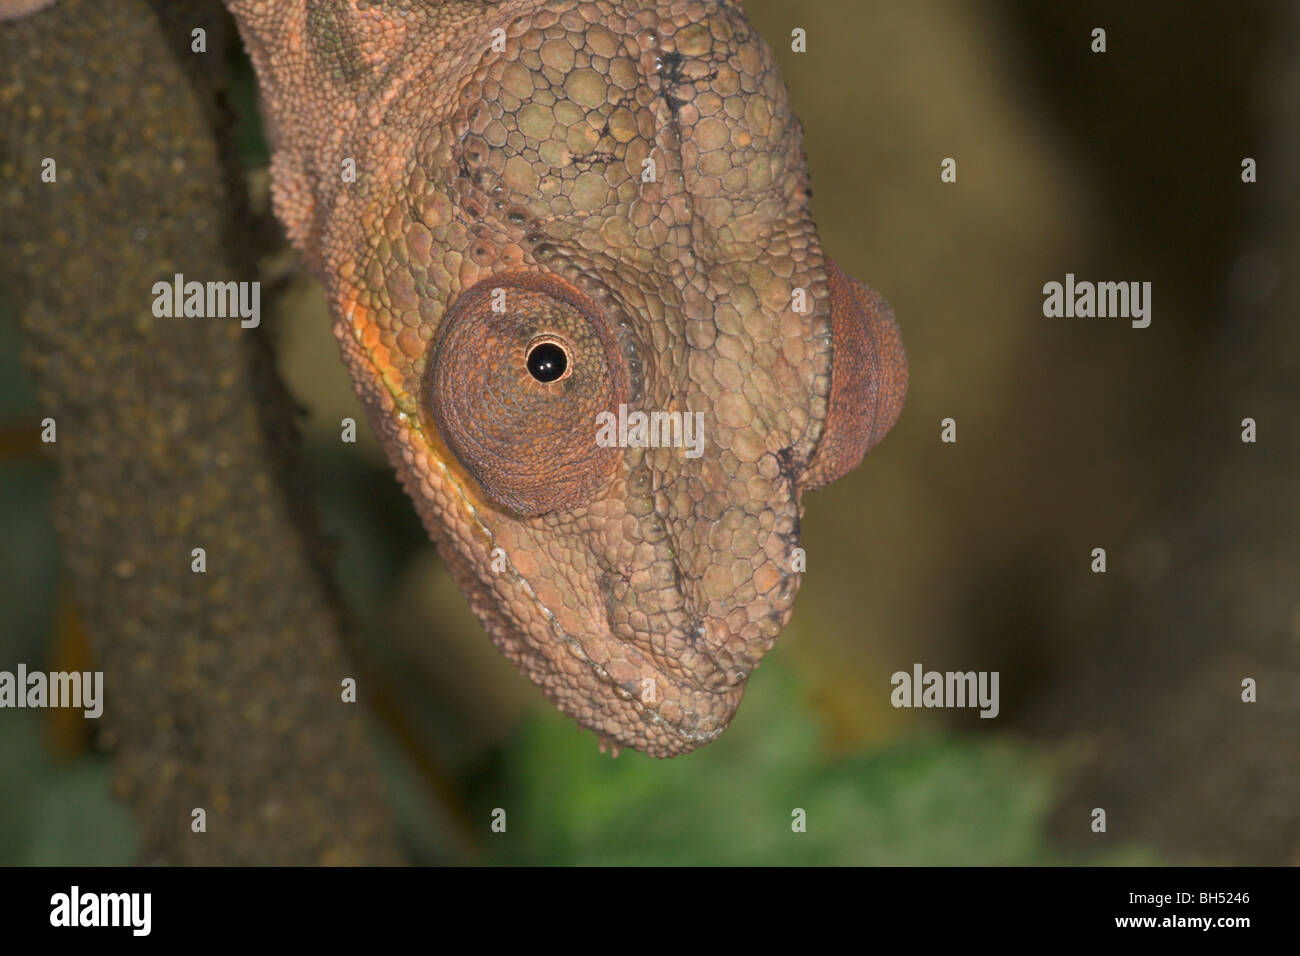 Parson's chamaeleon or chameleon (Calumma parsonii) female head portrait. Stock Photo